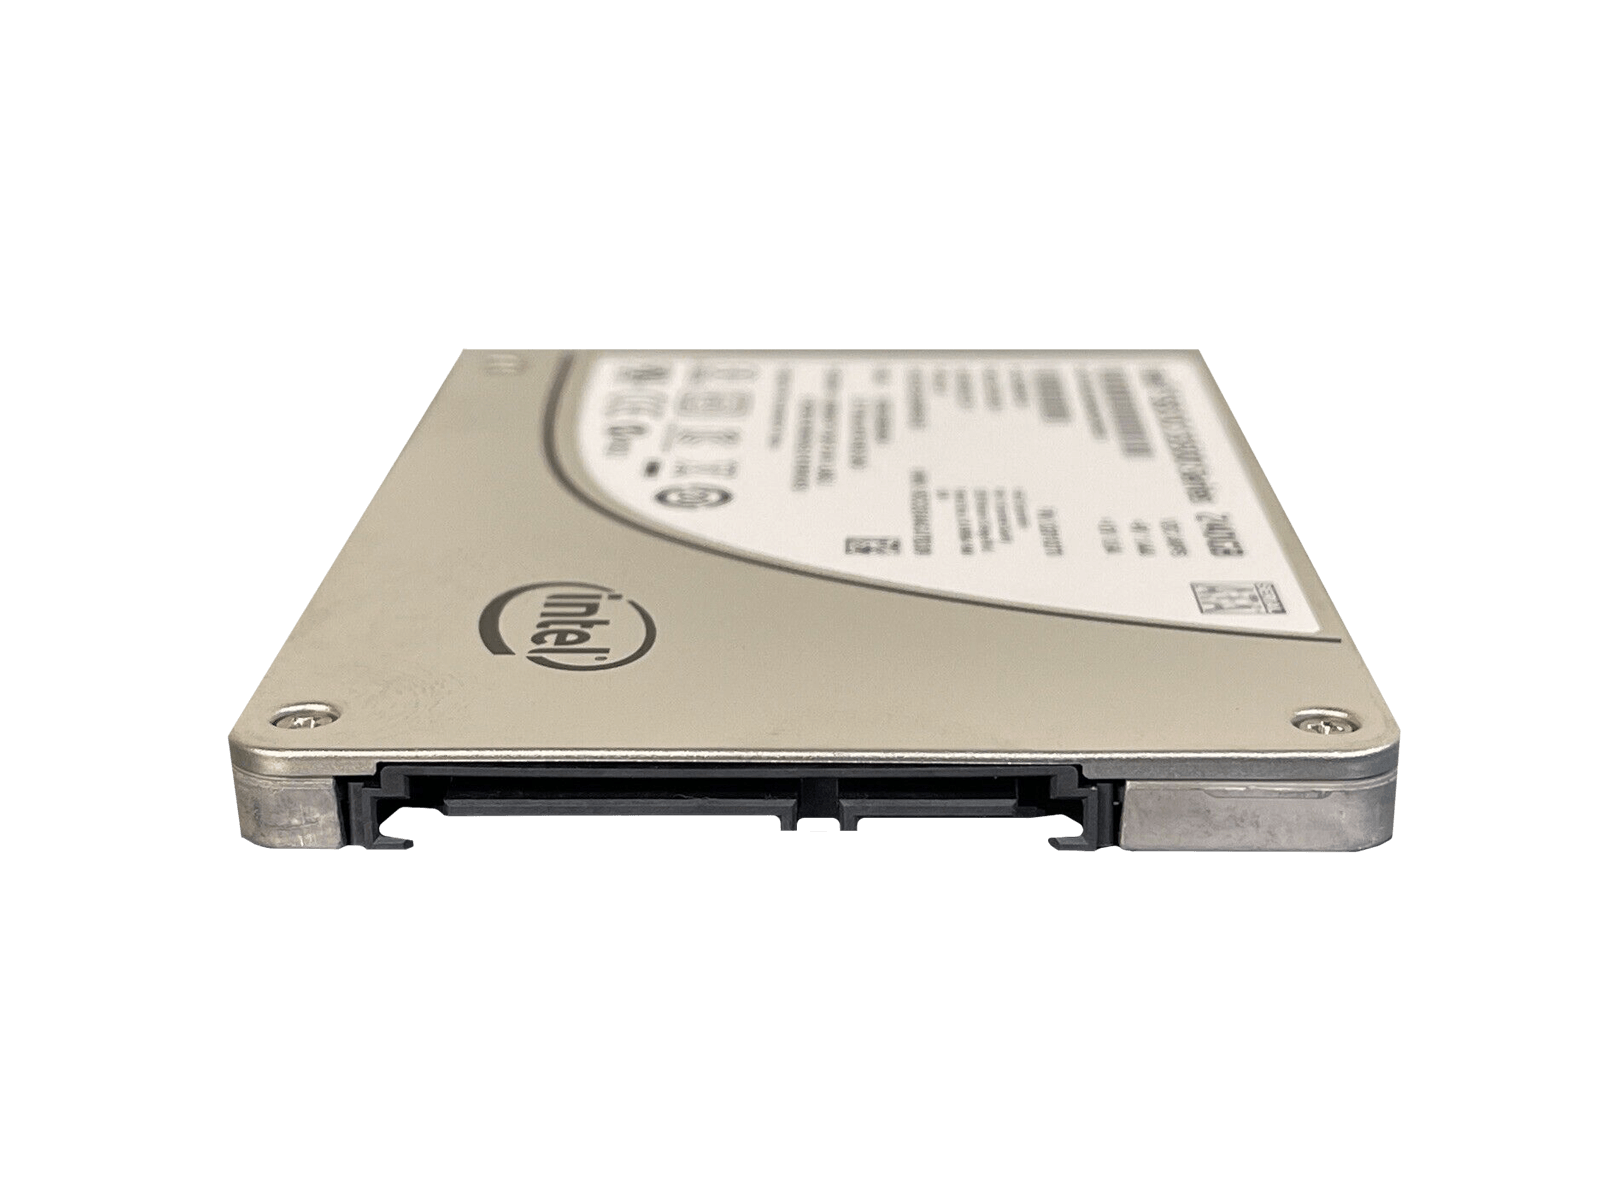 Intel SSDSC2BB240G4 240GB SATA 6Gb/s 2.5" SFF Read Intensive MLC SSD Solid State Drive